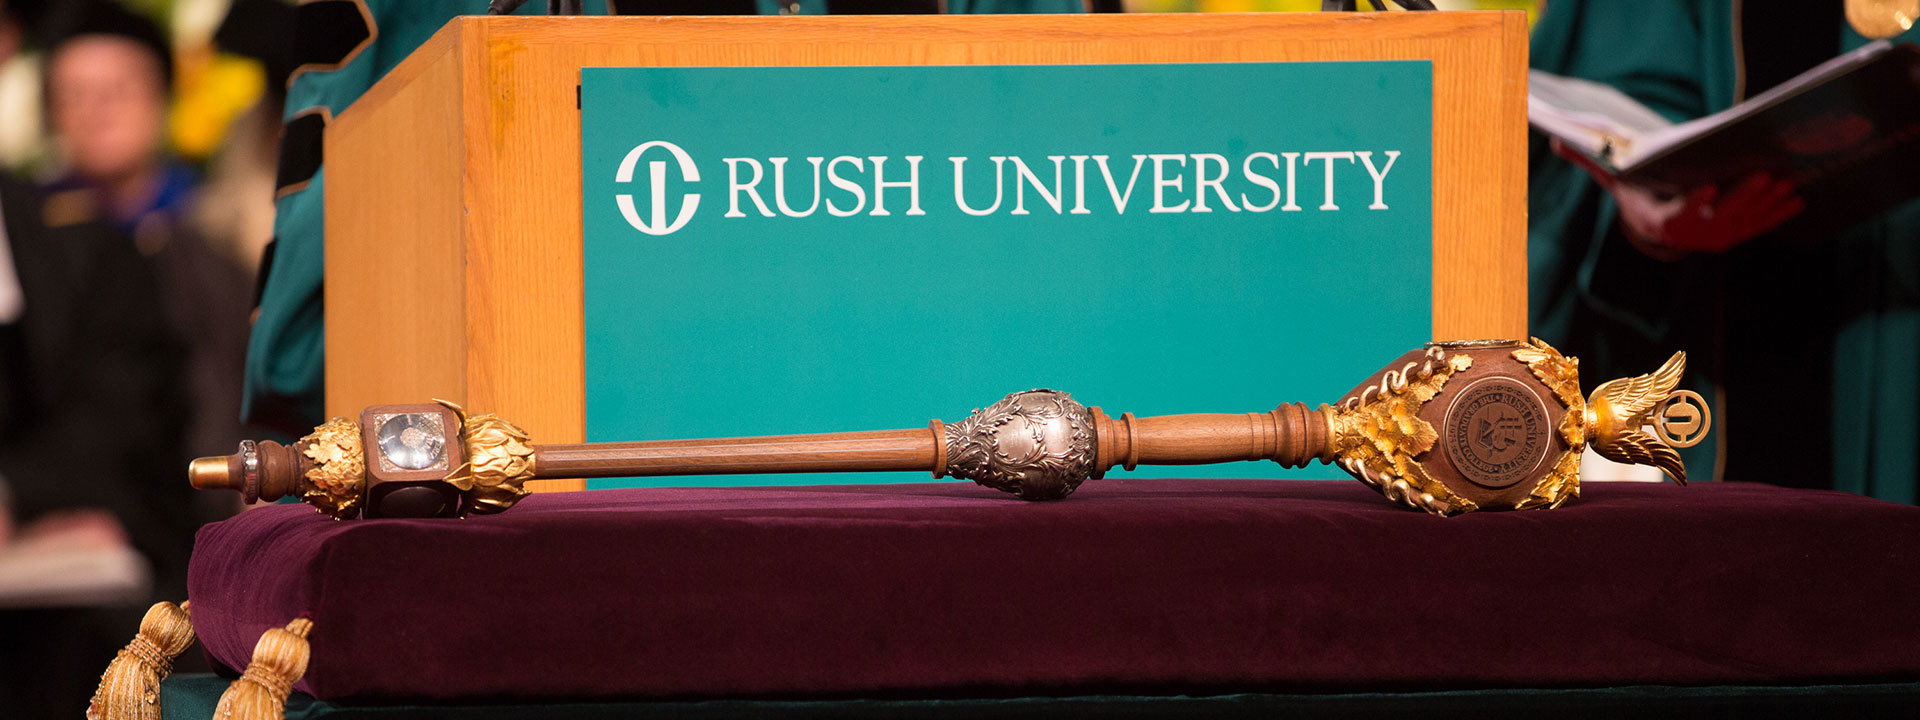 Rush University Commencement 2019 Student Affairs Rush University